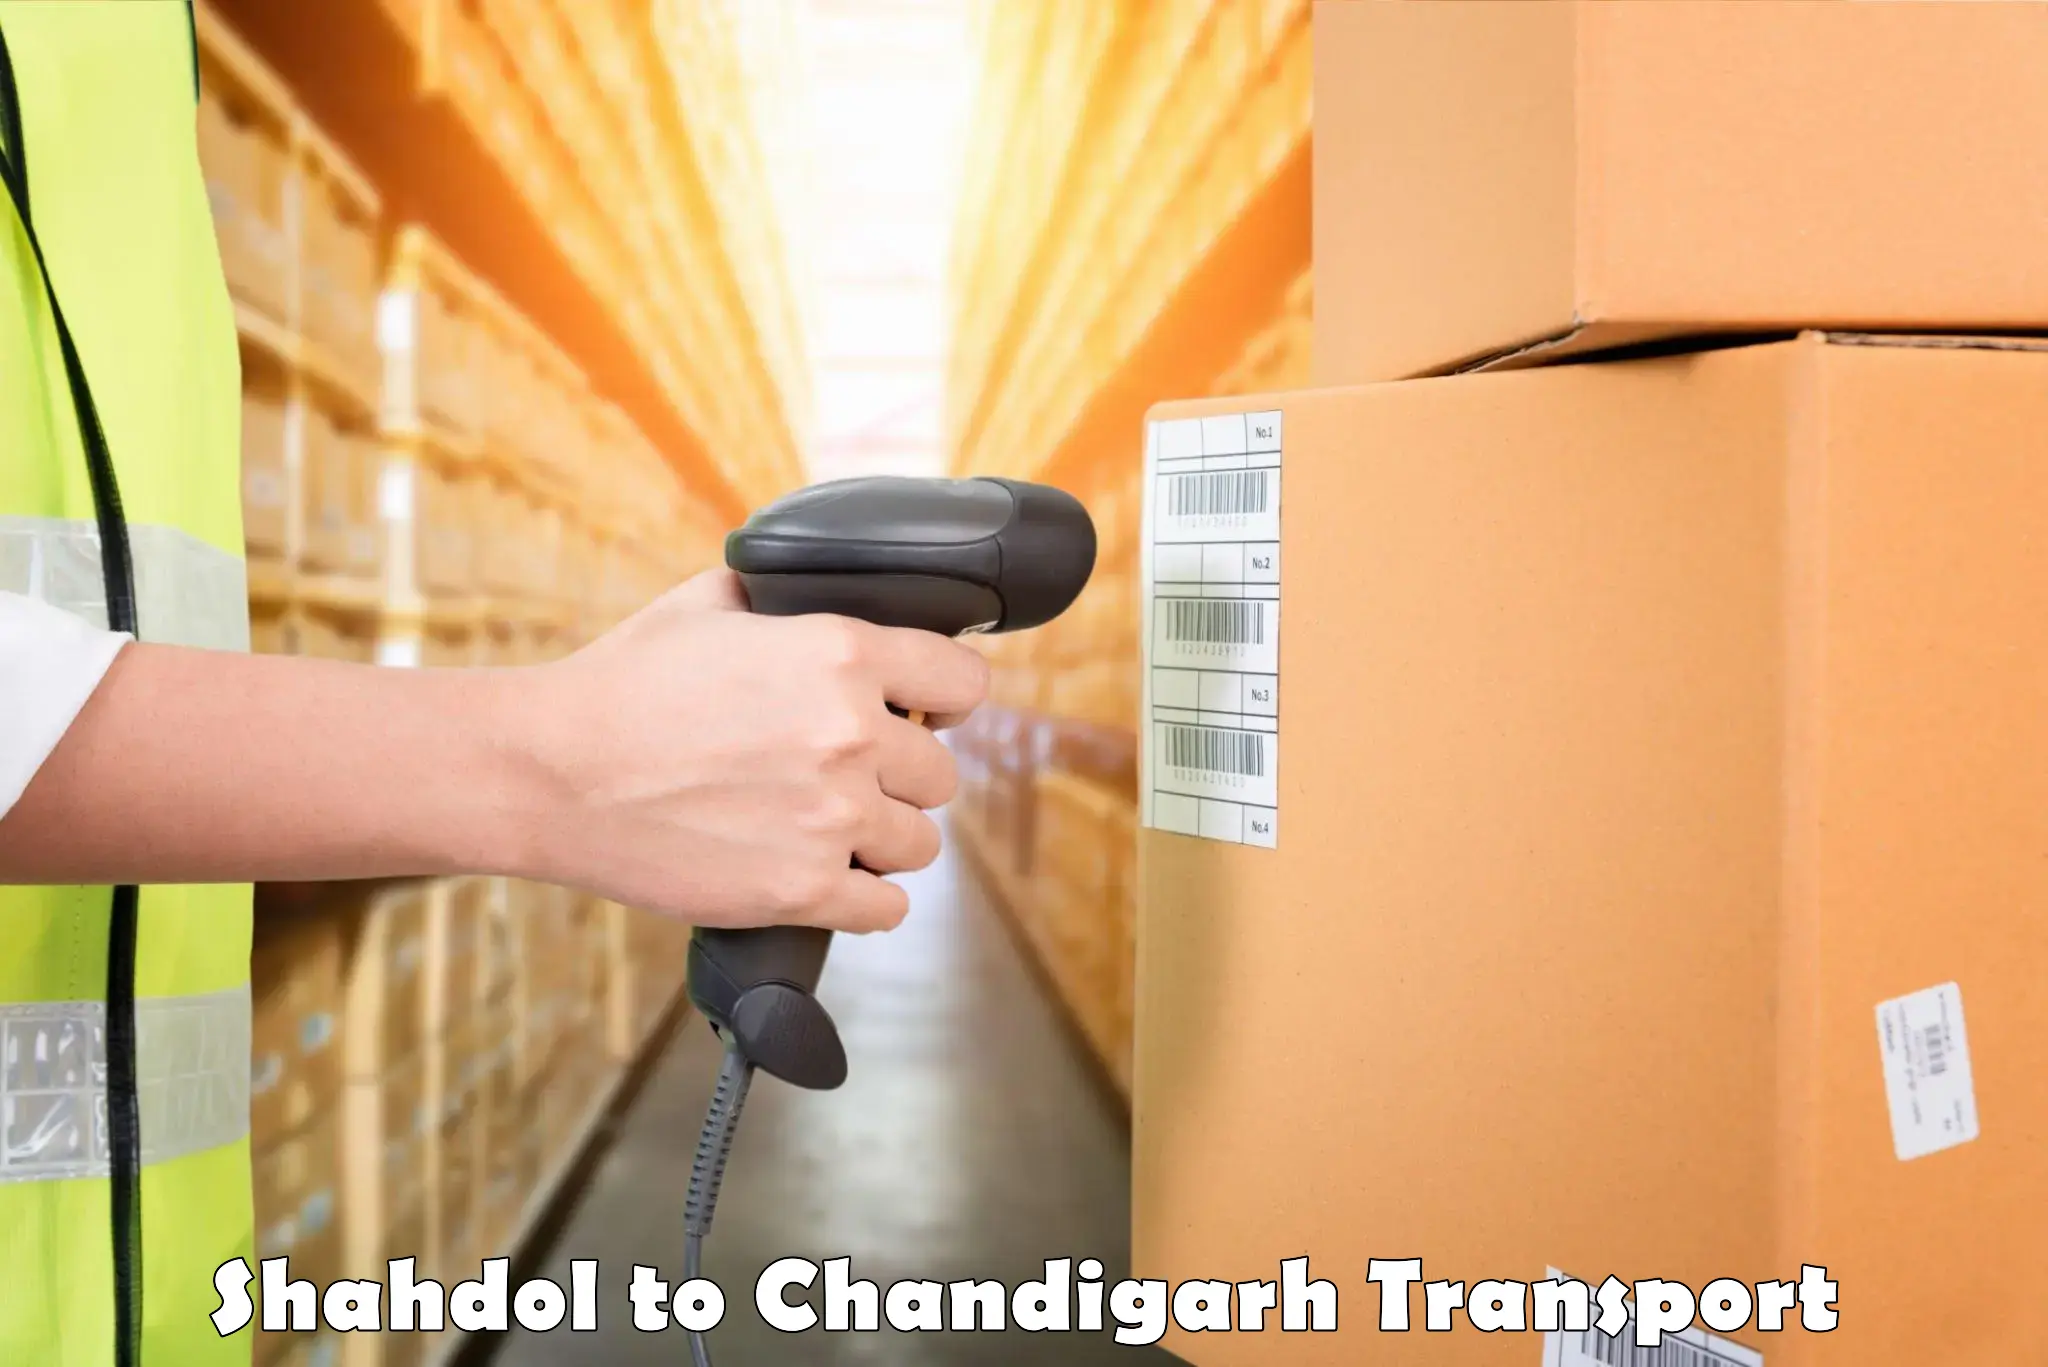 Online transport service Shahdol to Chandigarh